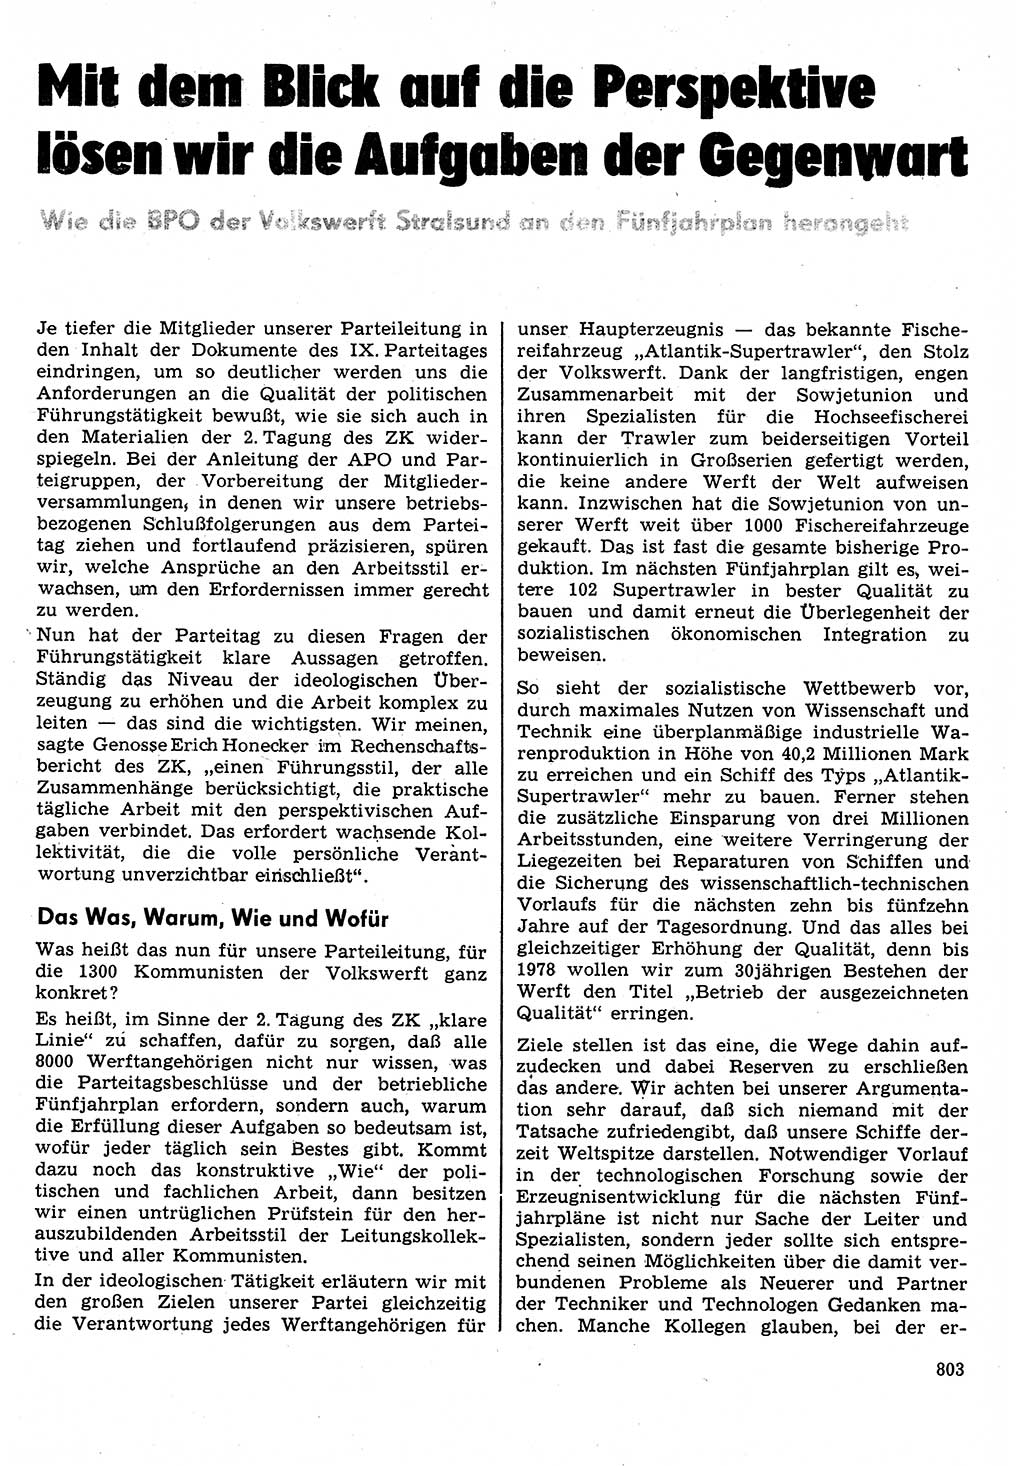 Neuer Weg (NW), Organ des Zentralkomitees (ZK) der SED (Sozialistische Einheitspartei Deutschlands) für Fragen des Parteilebens, 31. Jahrgang [Deutsche Demokratische Republik (DDR)] 1976, Seite 803 (NW ZK SED DDR 1976, S. 803)